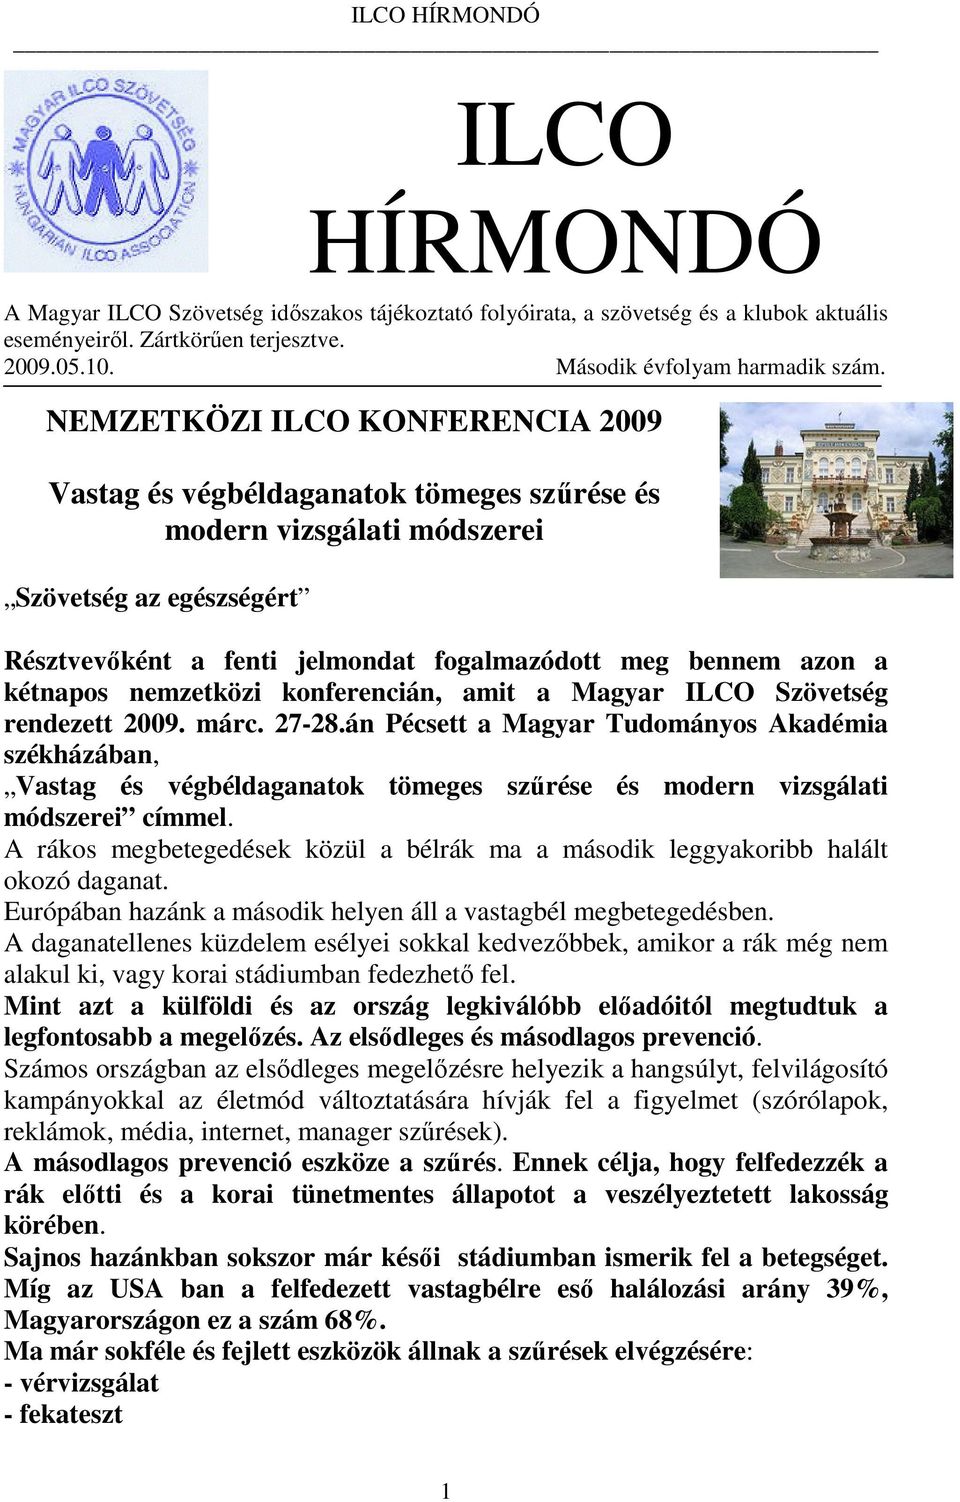 bennem azon a kétnapos nemzetközi konferencián, amit a Magyar ILCO Szövetség rendezett 2009. márc. 27-28.